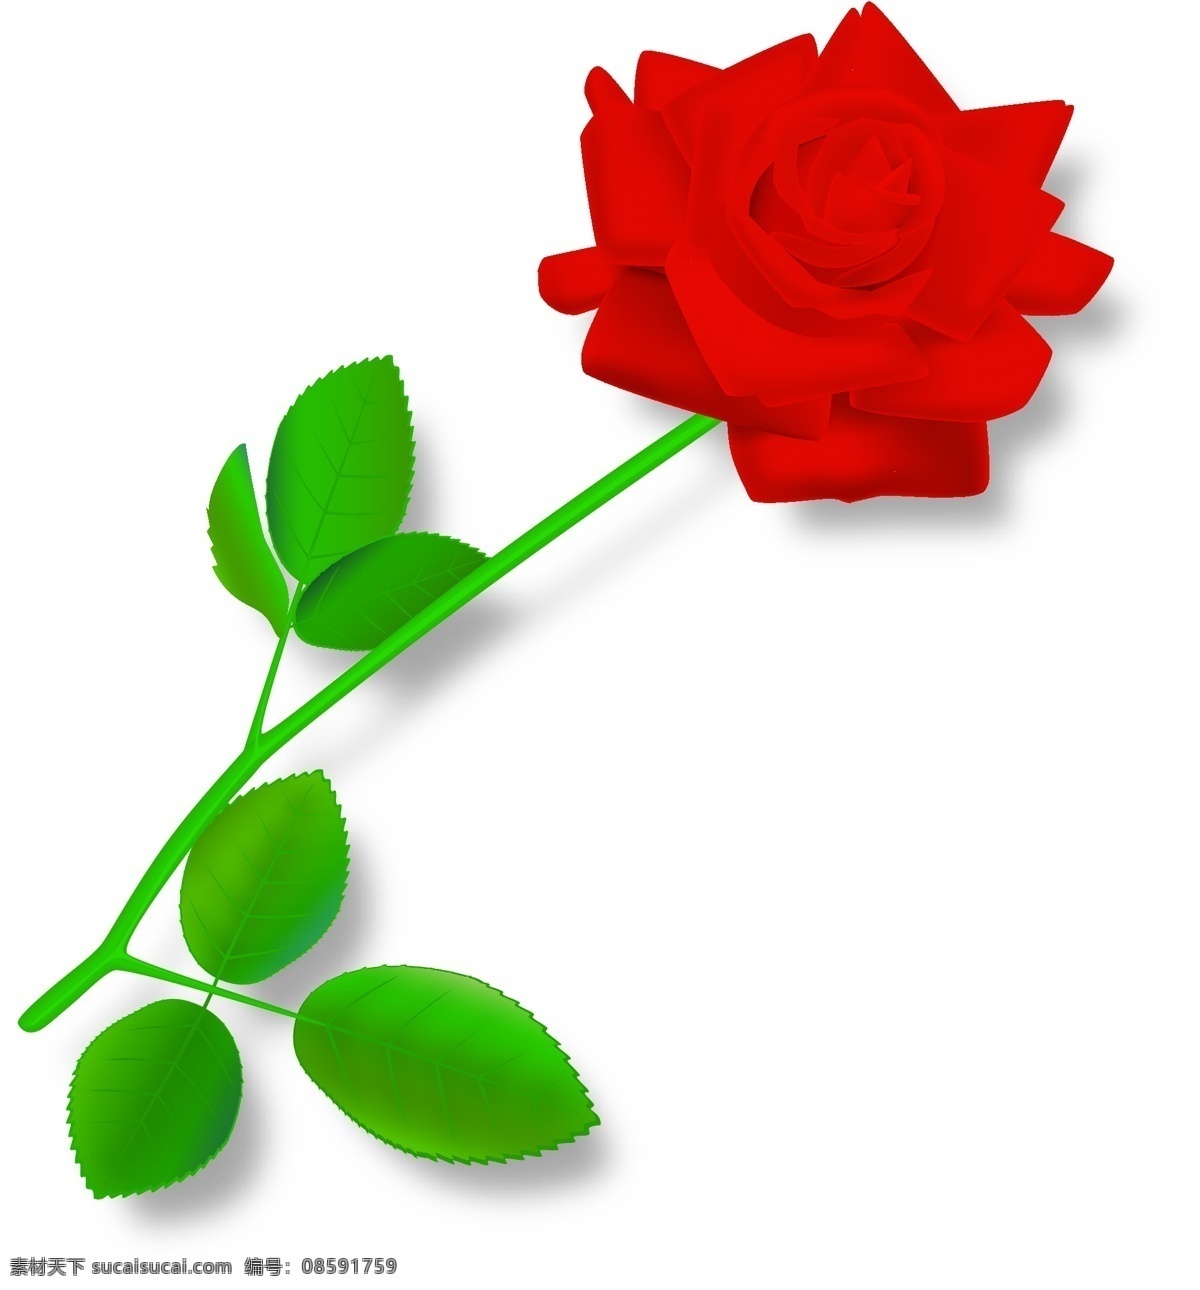 玫瑰 玫瑰花 节日素材 情人节 矢量图库 矢量